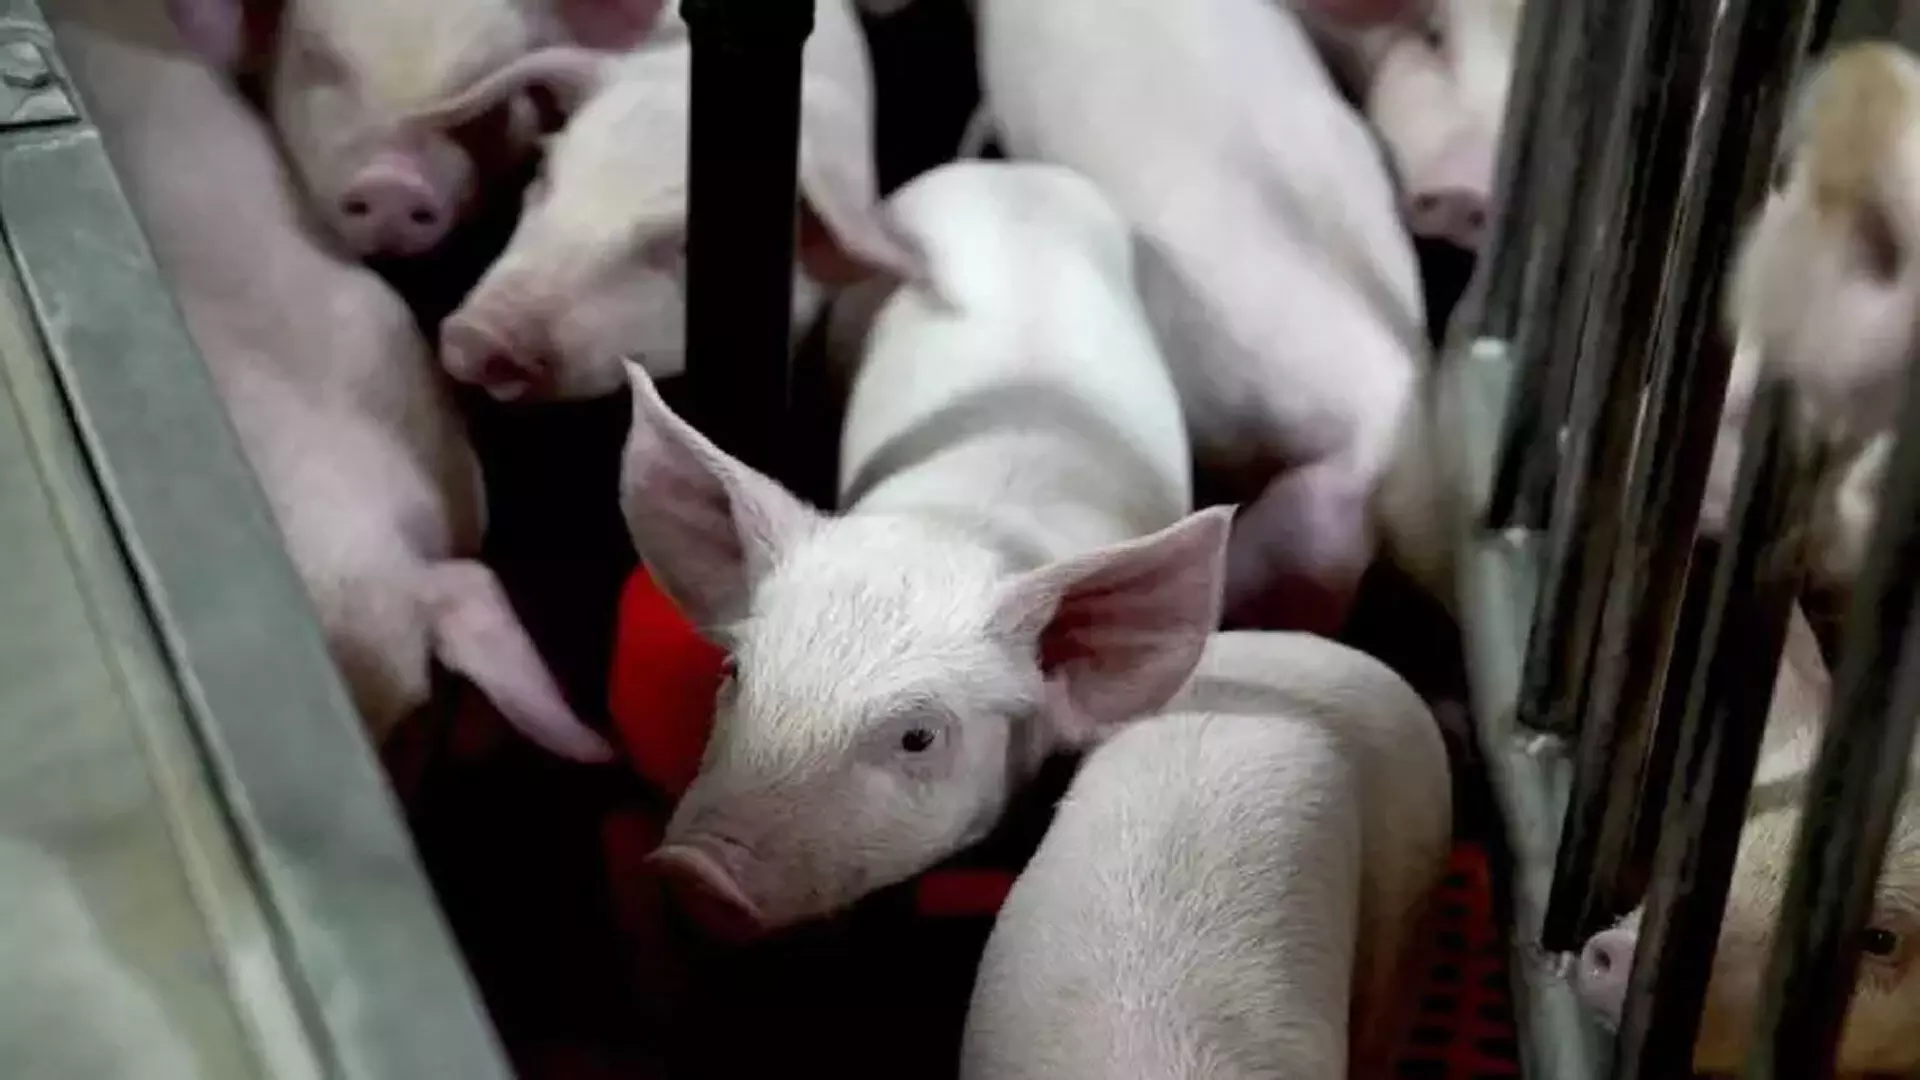 मिलिए दुनिया के कुछ सबसे स्वच्छ सूअरों से, इंसानों में लगेगी इनकी kidney और heart